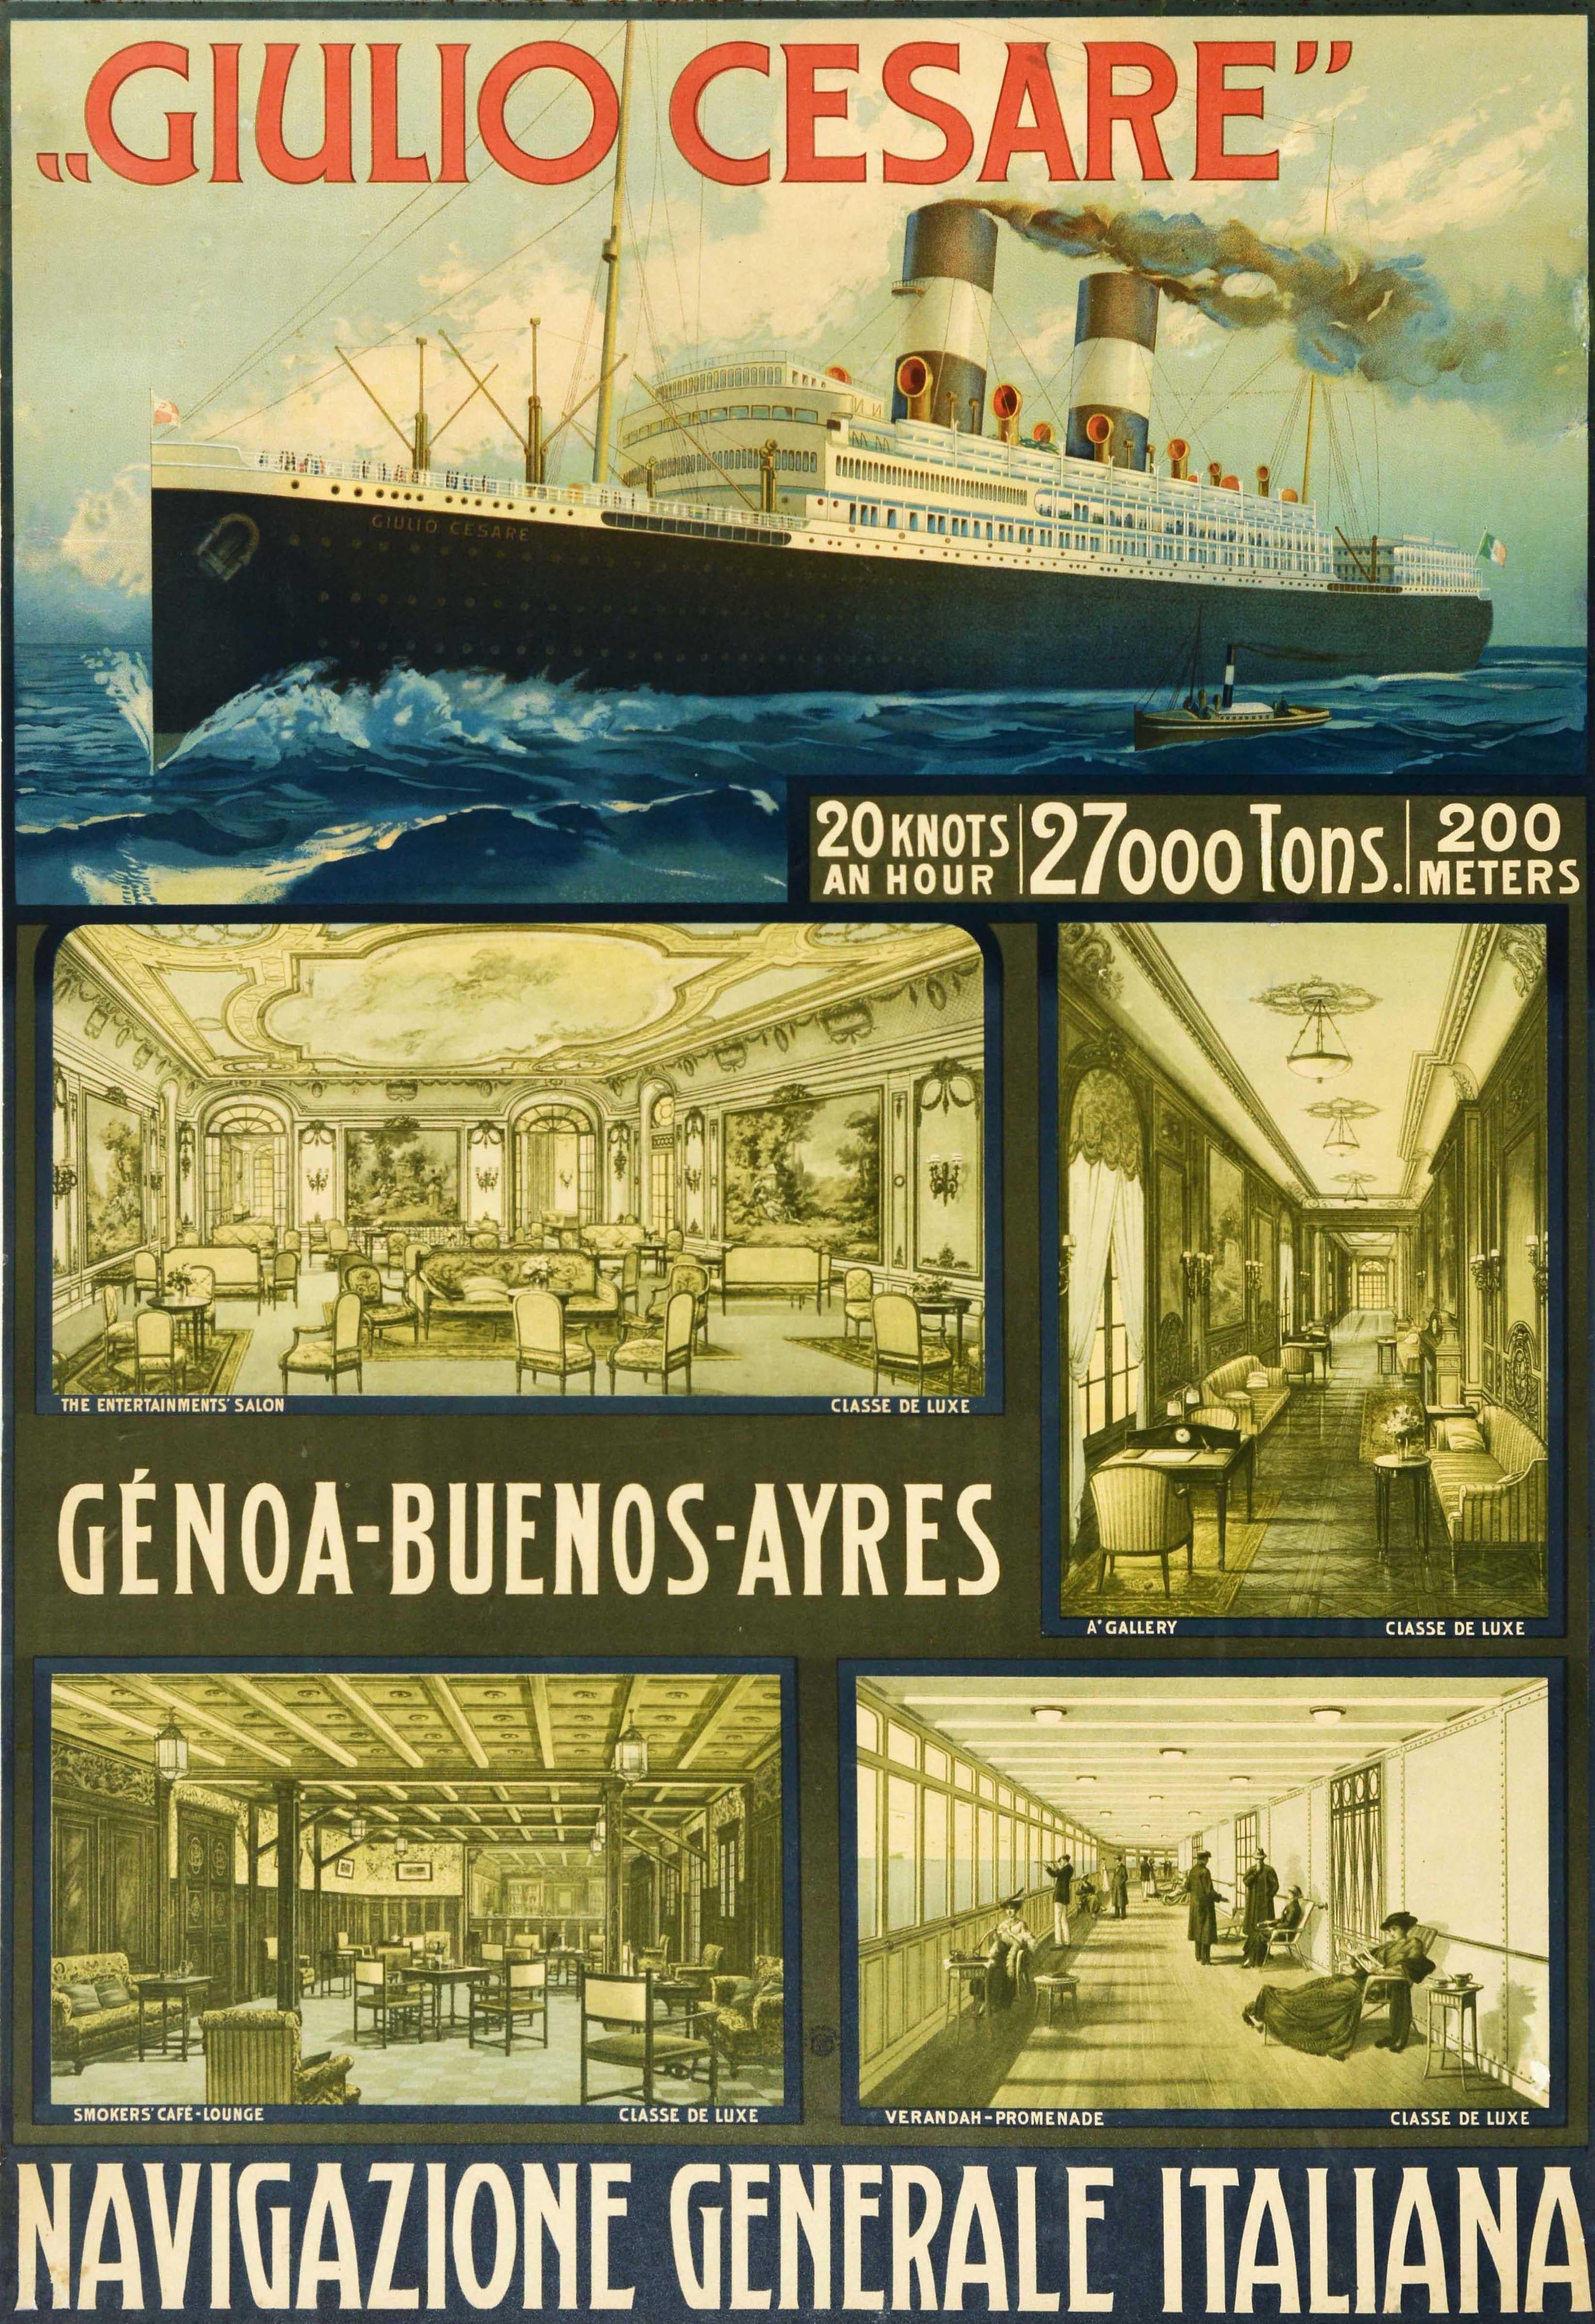 Print Unknown - Affiche rétro originale de Giulio Cesare, bateau à vapeur à vapeur, paquebot de croisière, voyage NGI 